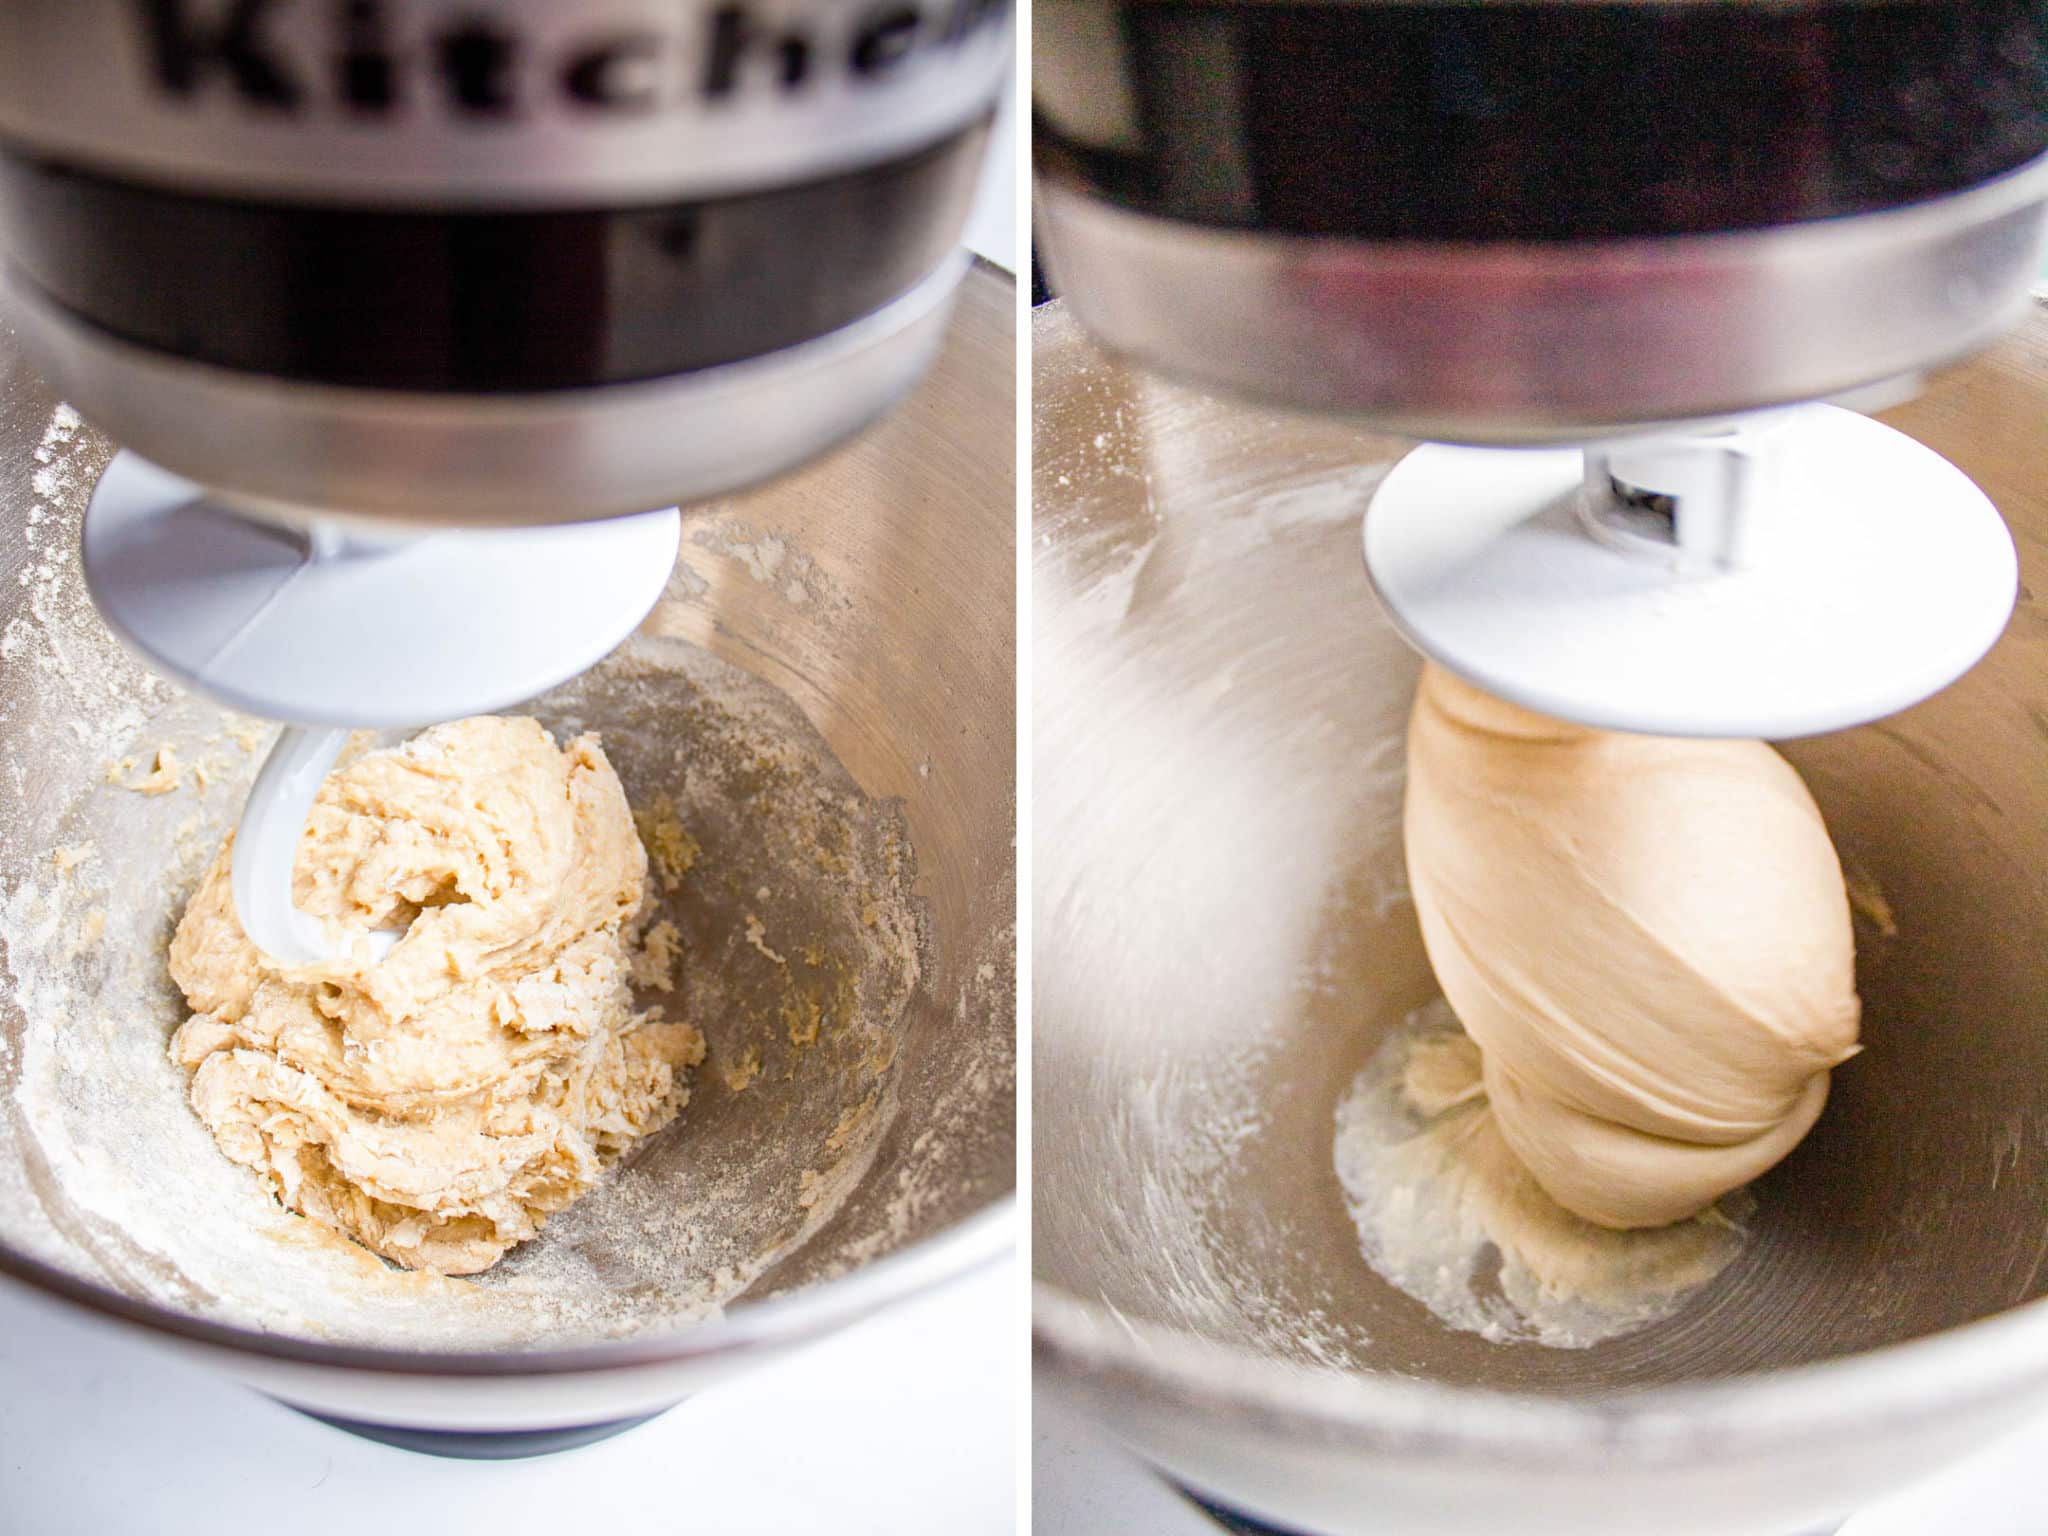 Dough kneading in a mixer.